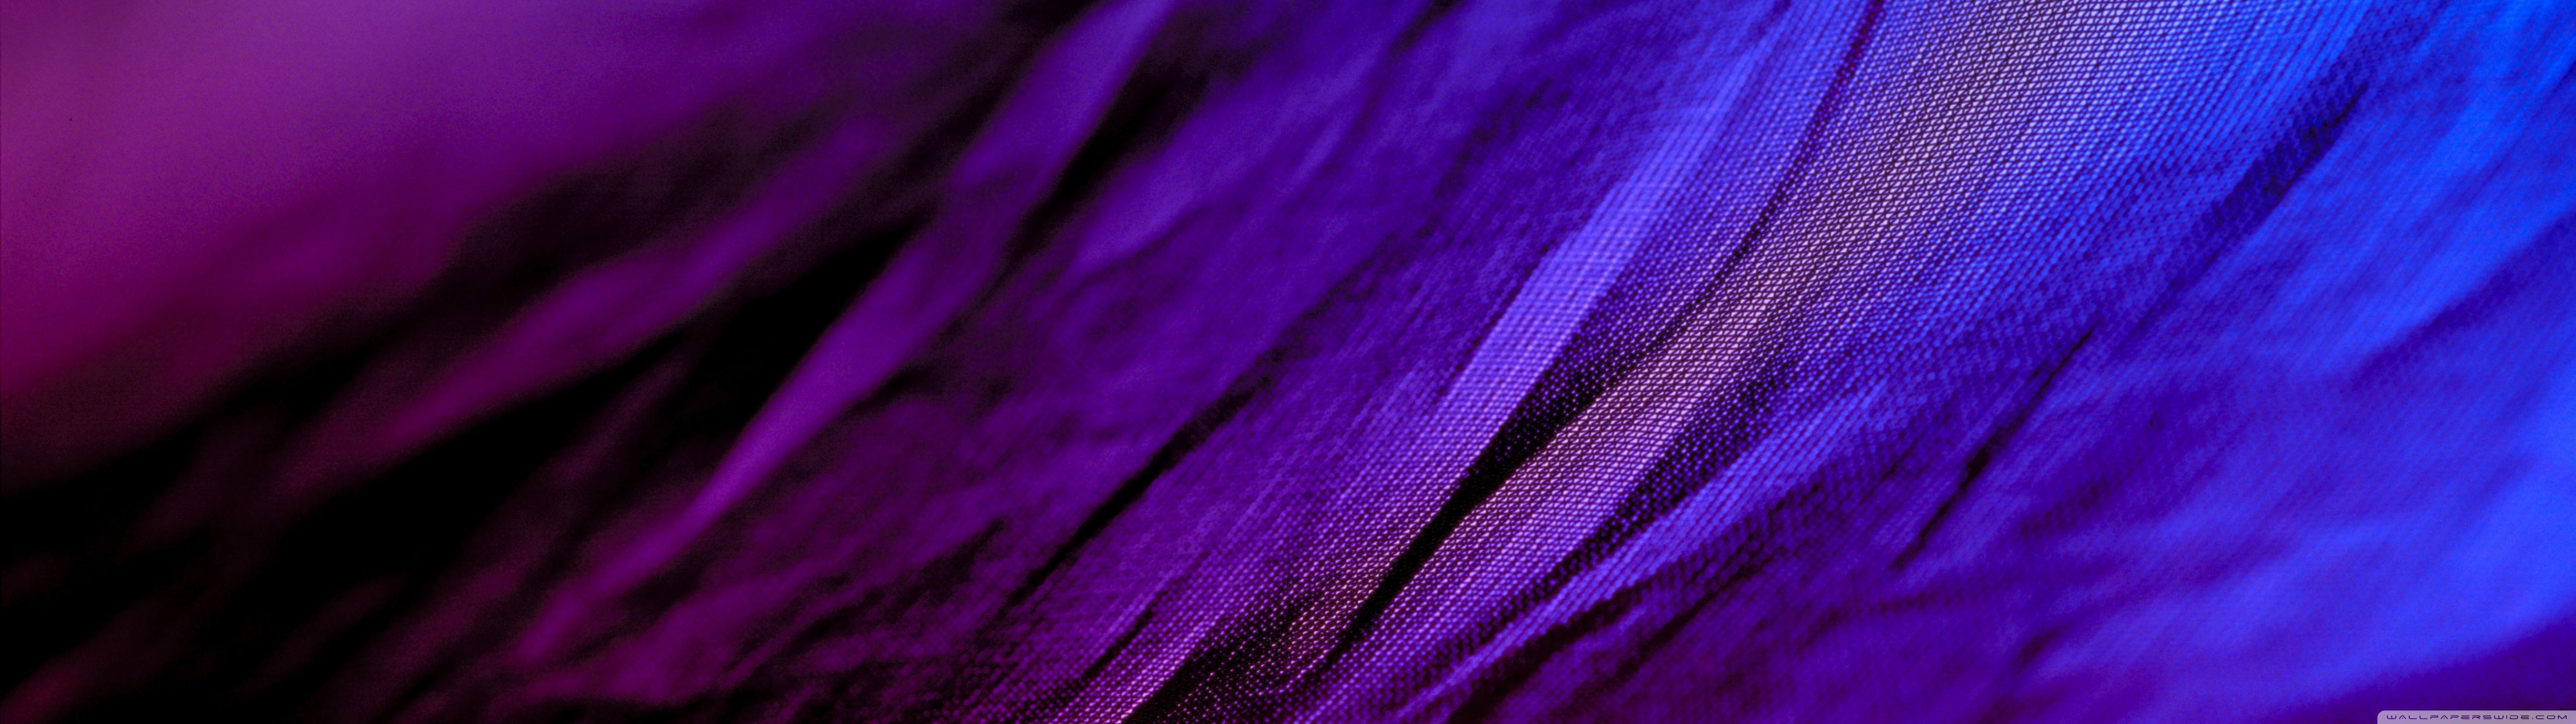 Purple: Màu tím là biểu tượng của sự sang trọng, tinh thuần và đẳng cấp. Tận hưởng vẻ đẹp của những hình ảnh lông vũ tím hay bông hoa tím nhẹ nhàng trong không khí dịu mát. Sự tươi sáng và sống động của màu tím chắc chắn sẽ khiến bạn thích thú.